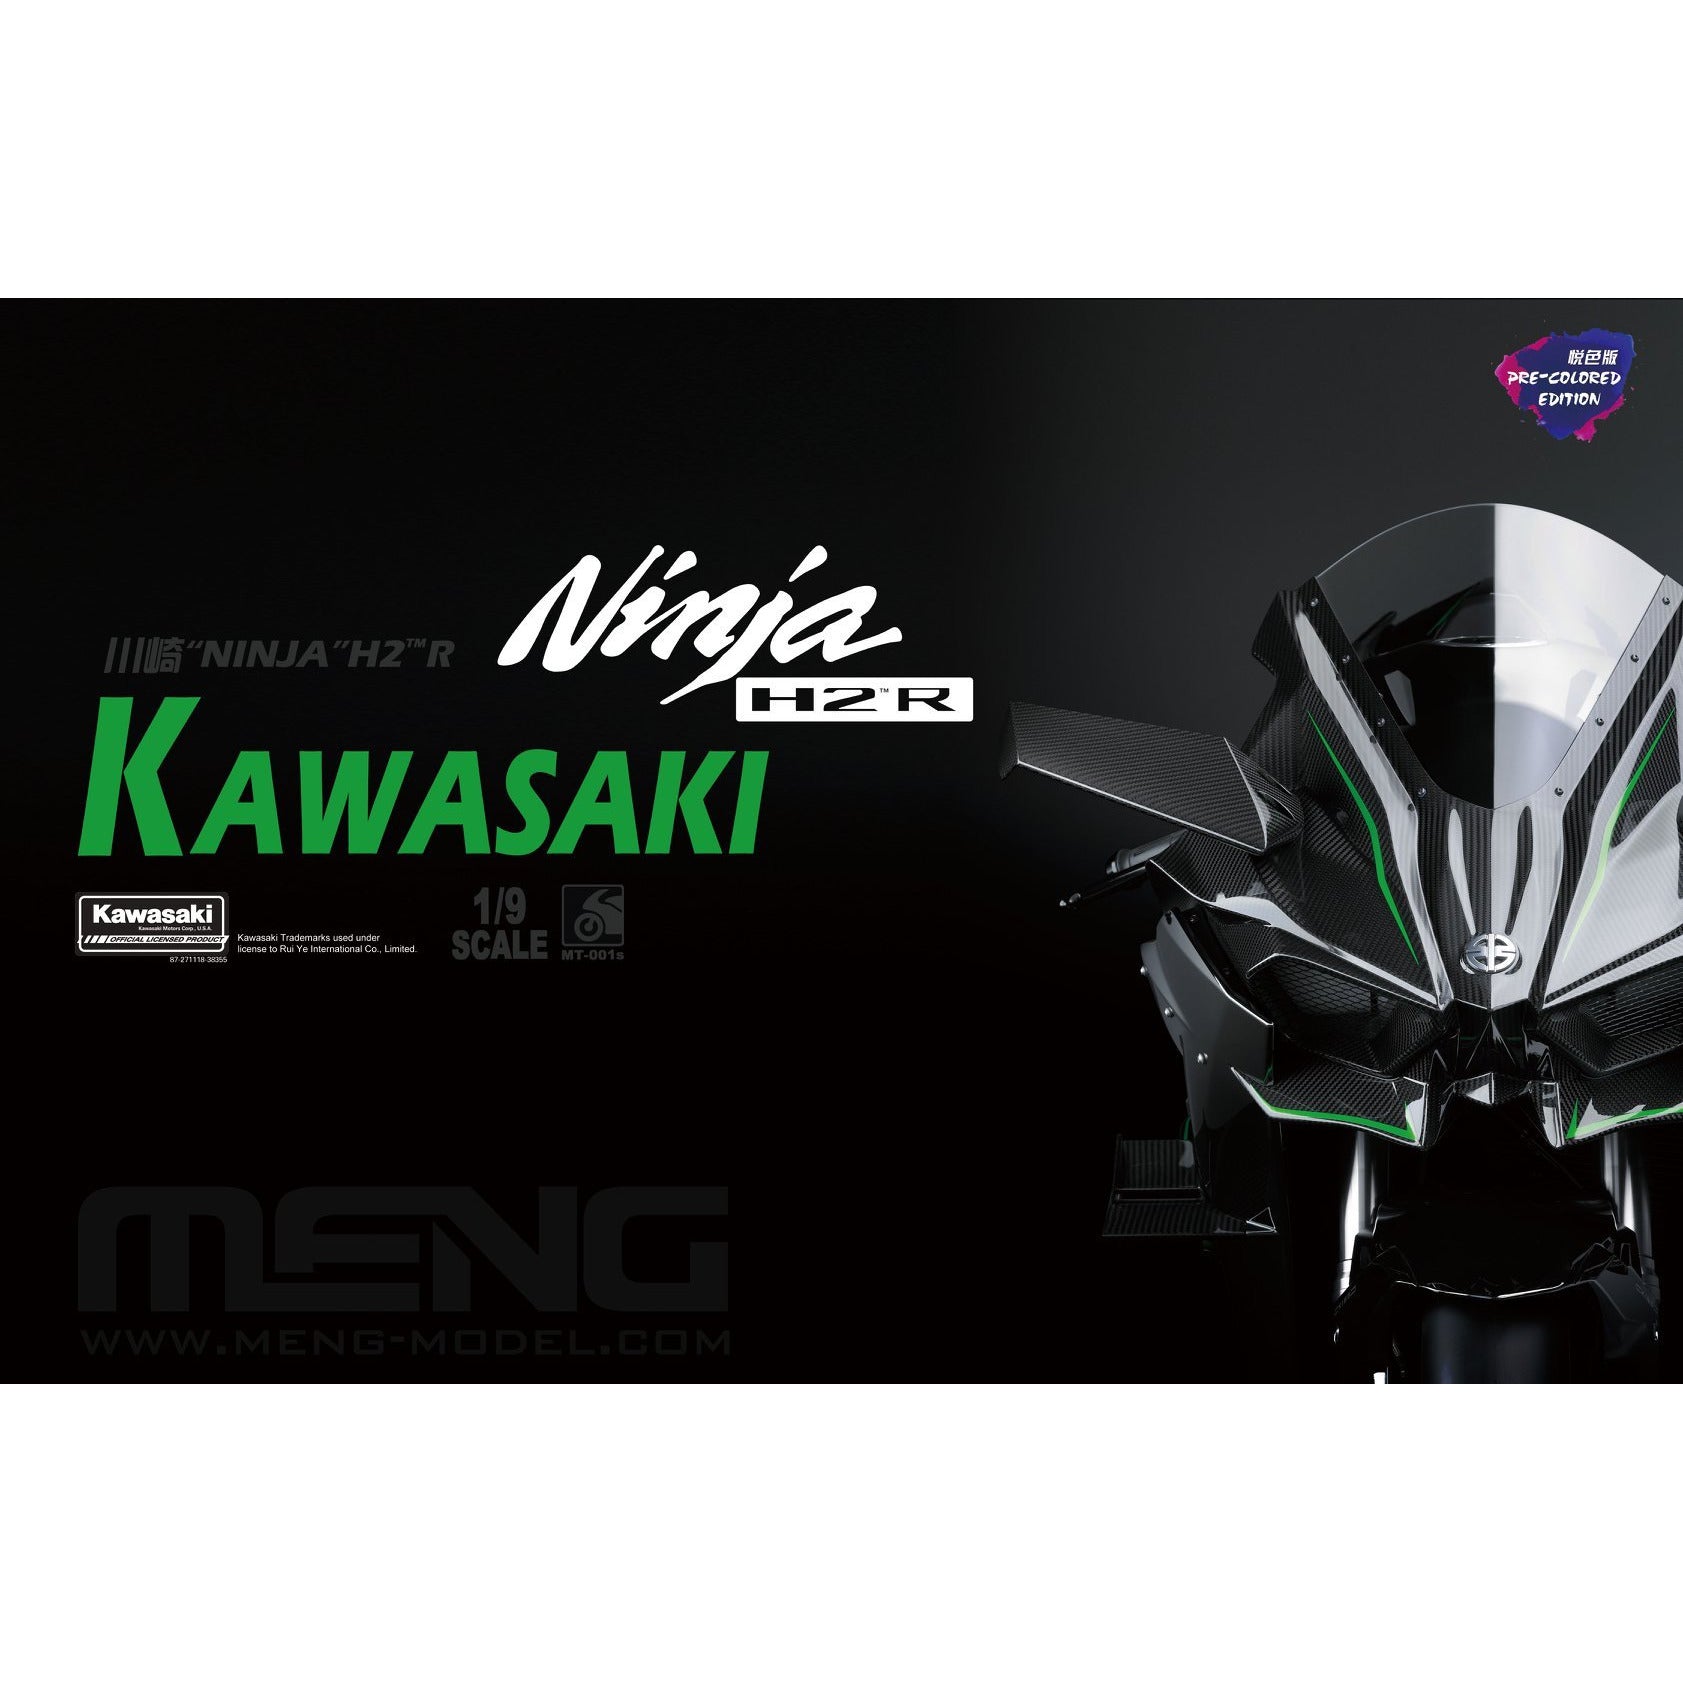 Kawasaki Ninja H2 R (Pre Coloured) 1/9 by Meng